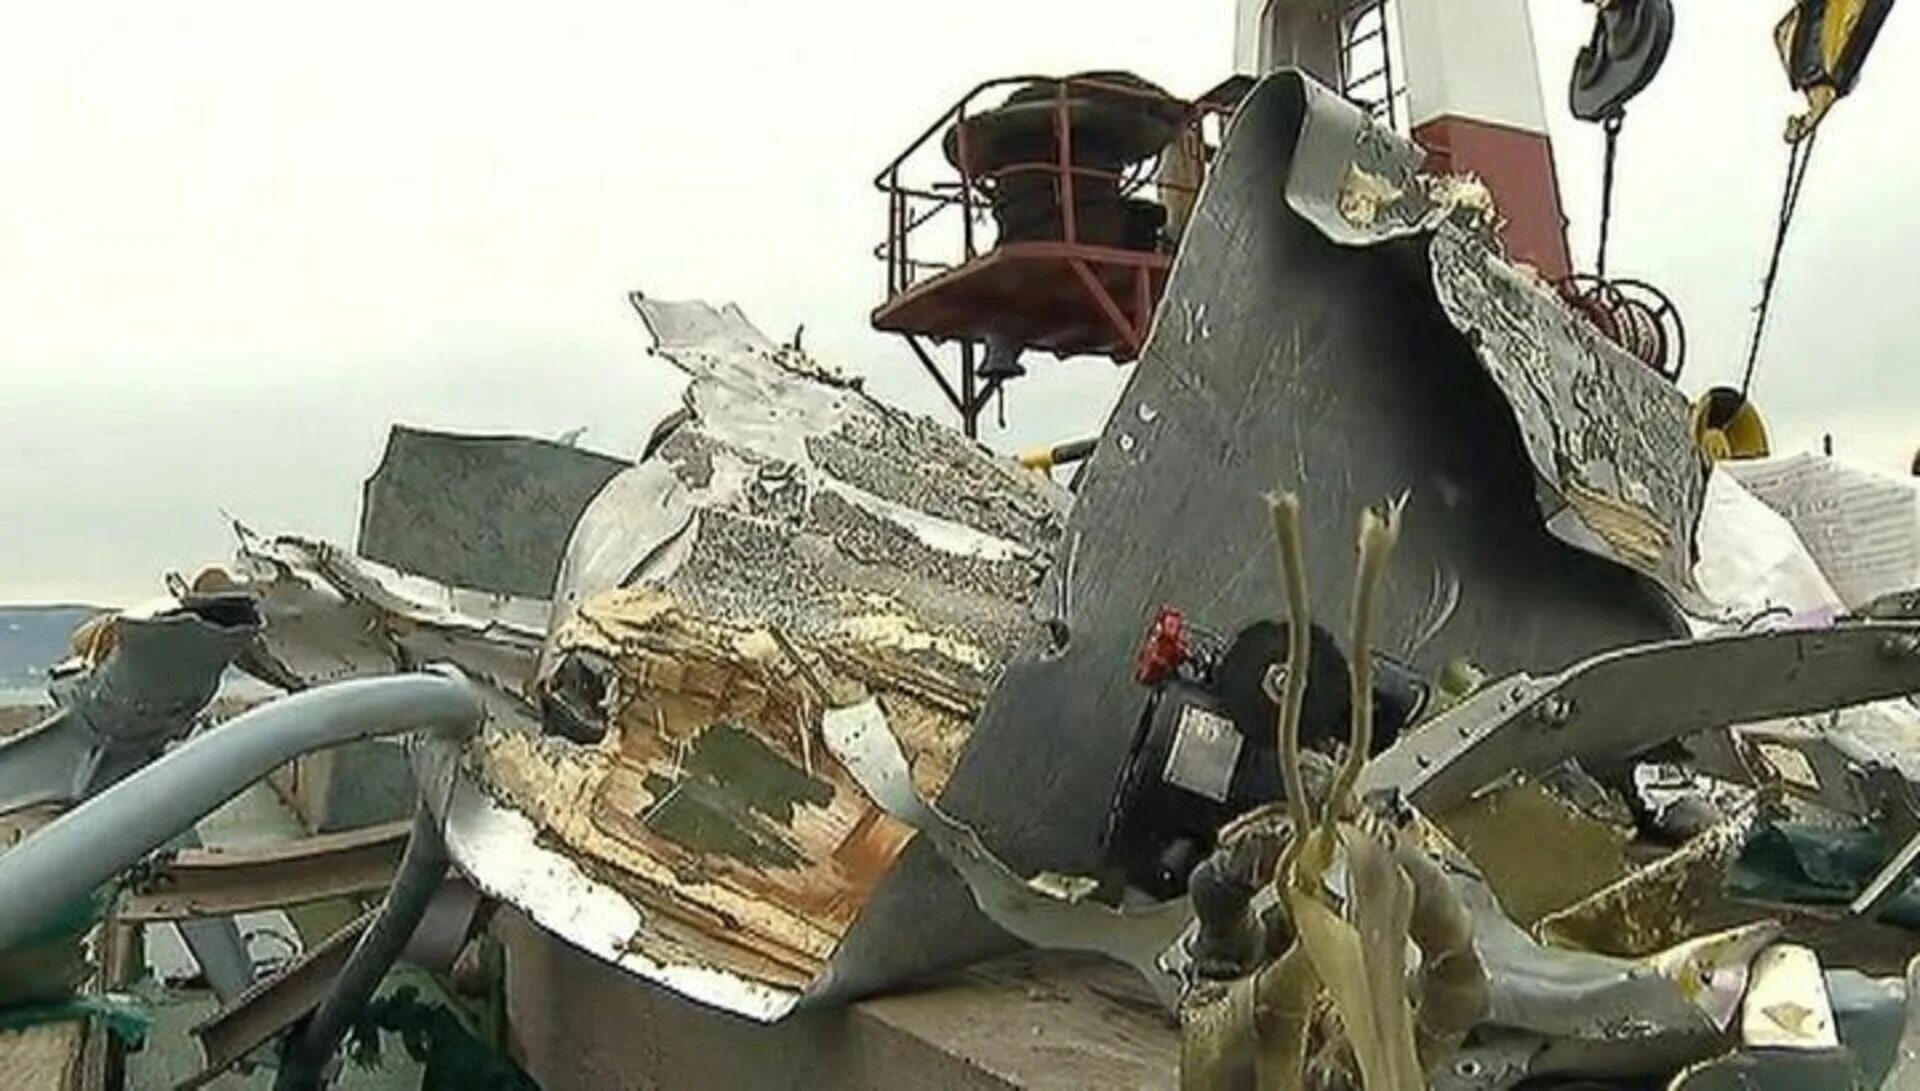 Ту-154 Сочи катастрофа. Авиакатастрофа в Сочи 2016 ту 154. Ту 154 авиакатастрофа Сочи. Катастро́фа ту-154 под Со́чи. Авиакатастрофа море